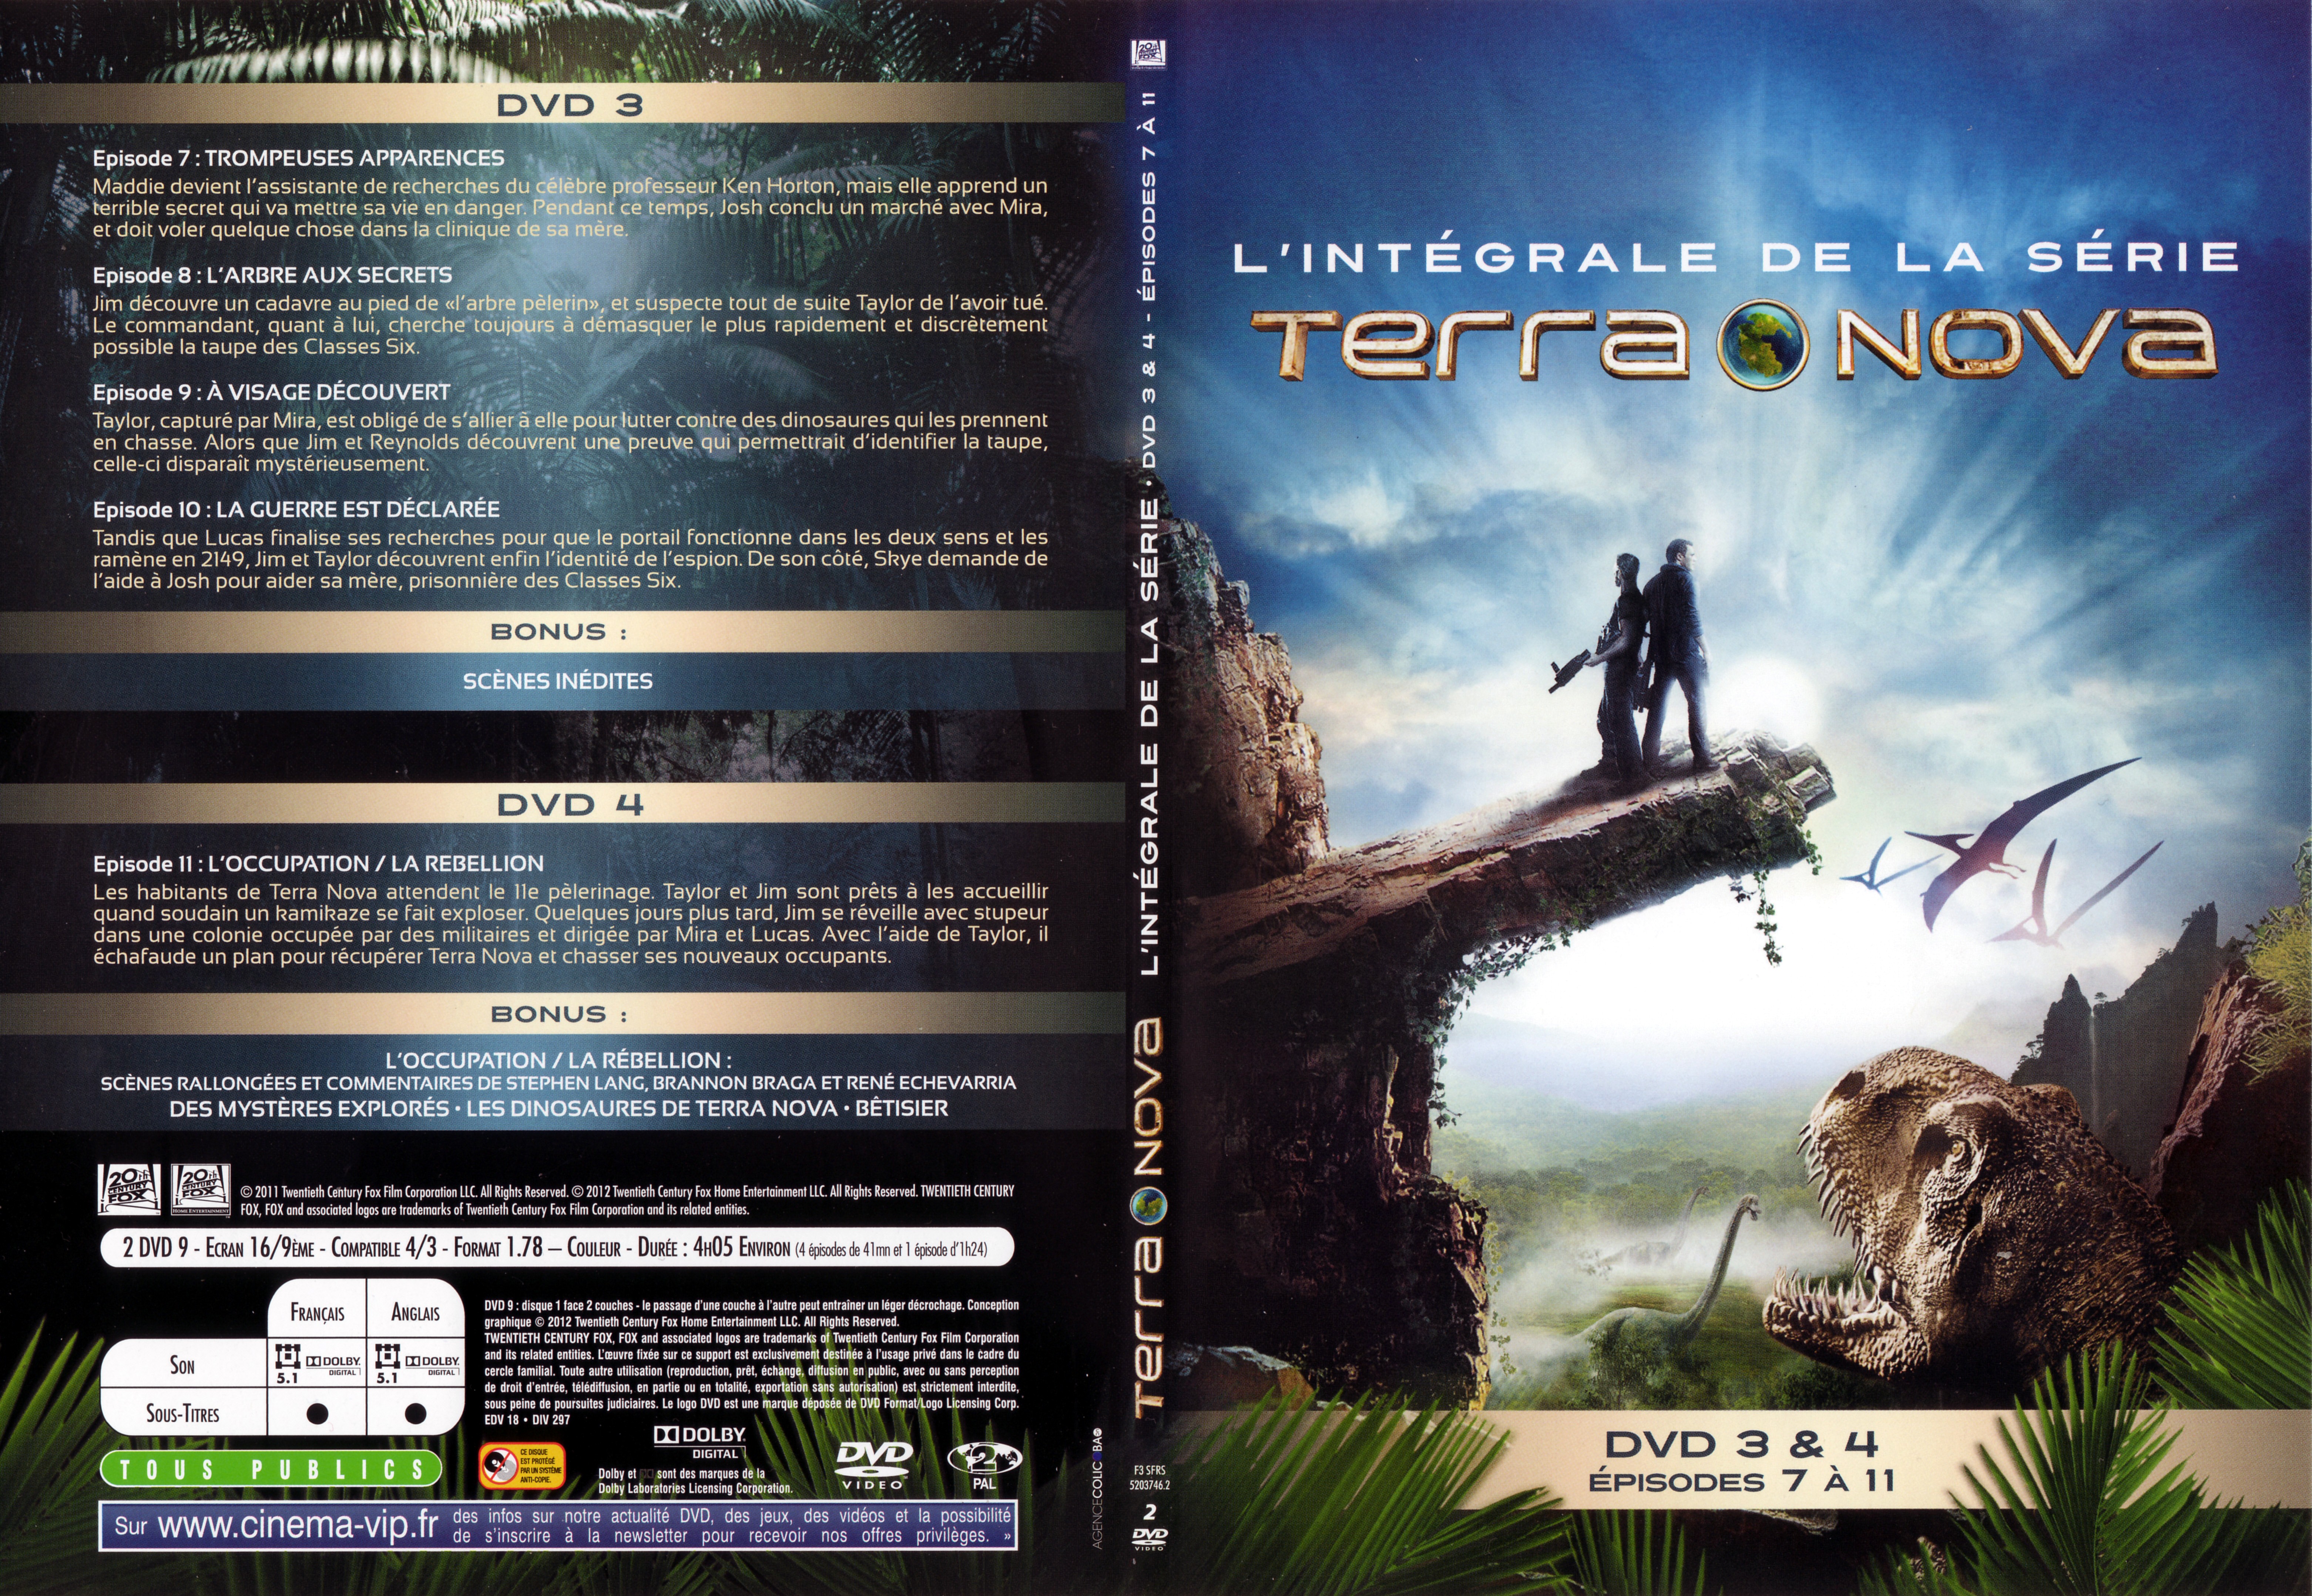 Jaquette DVD Terra Nova - Episodes 7  11